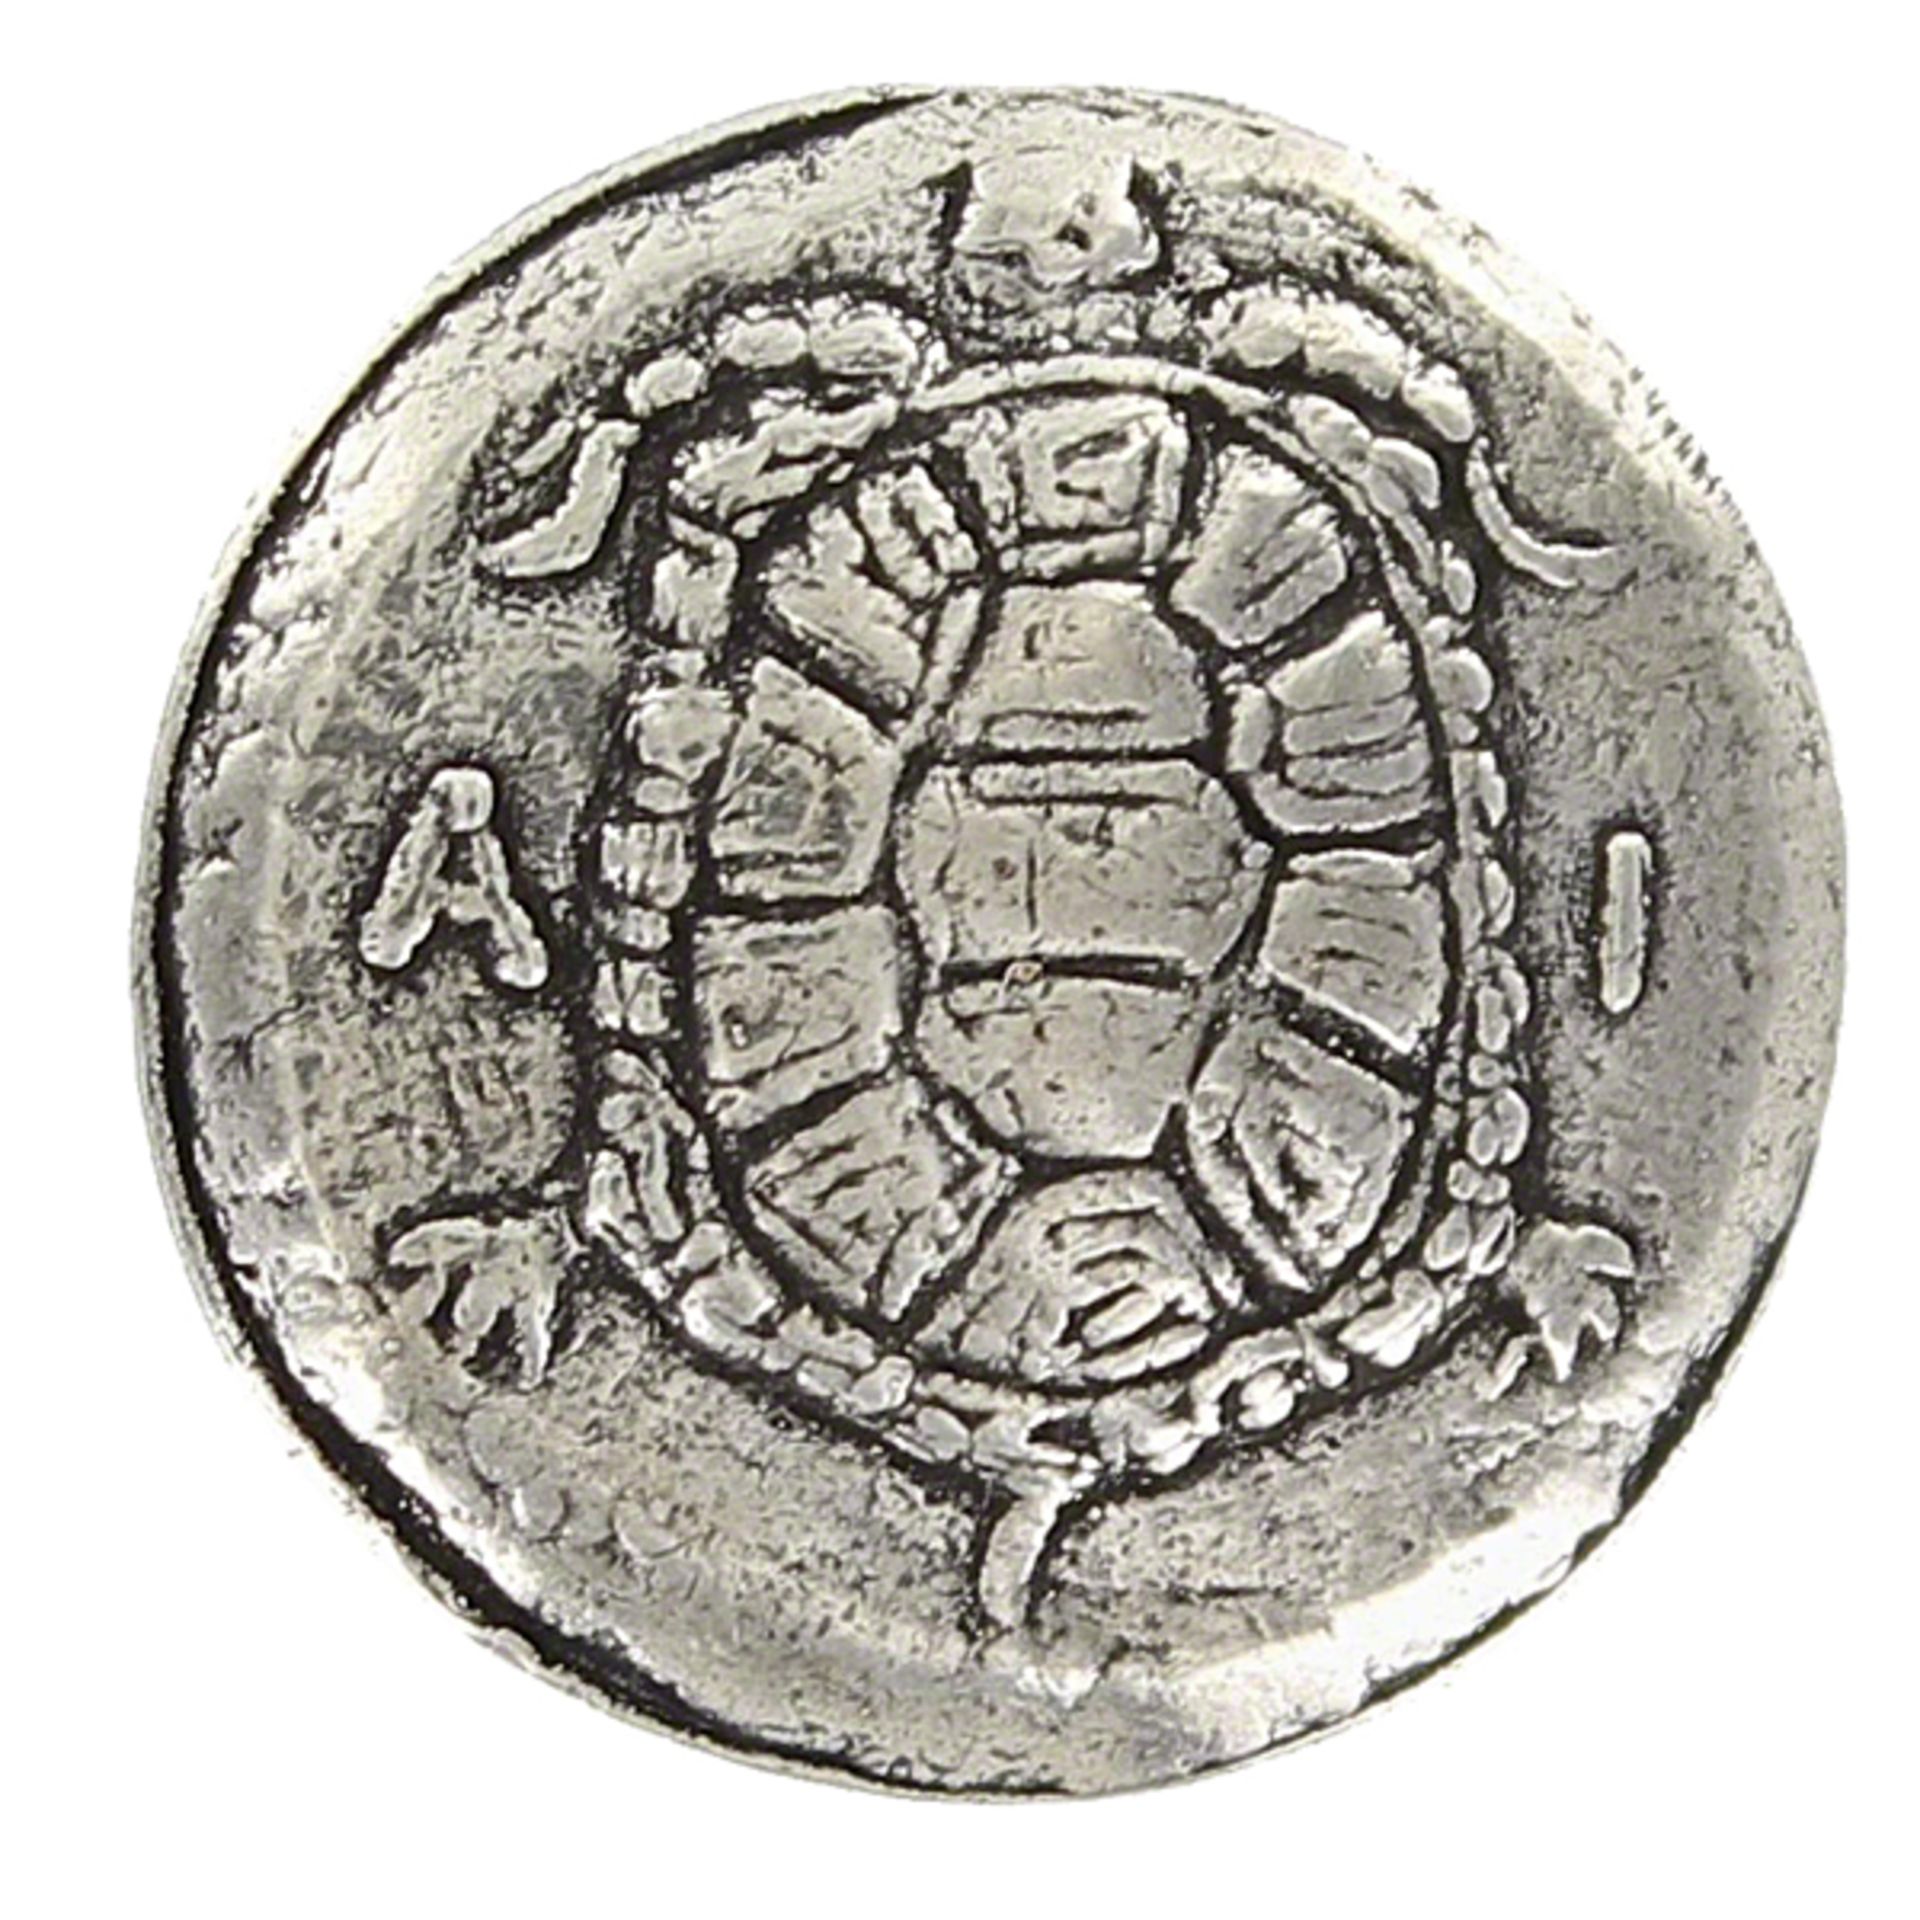 Aegina Turtle/Stater 456BC Coin